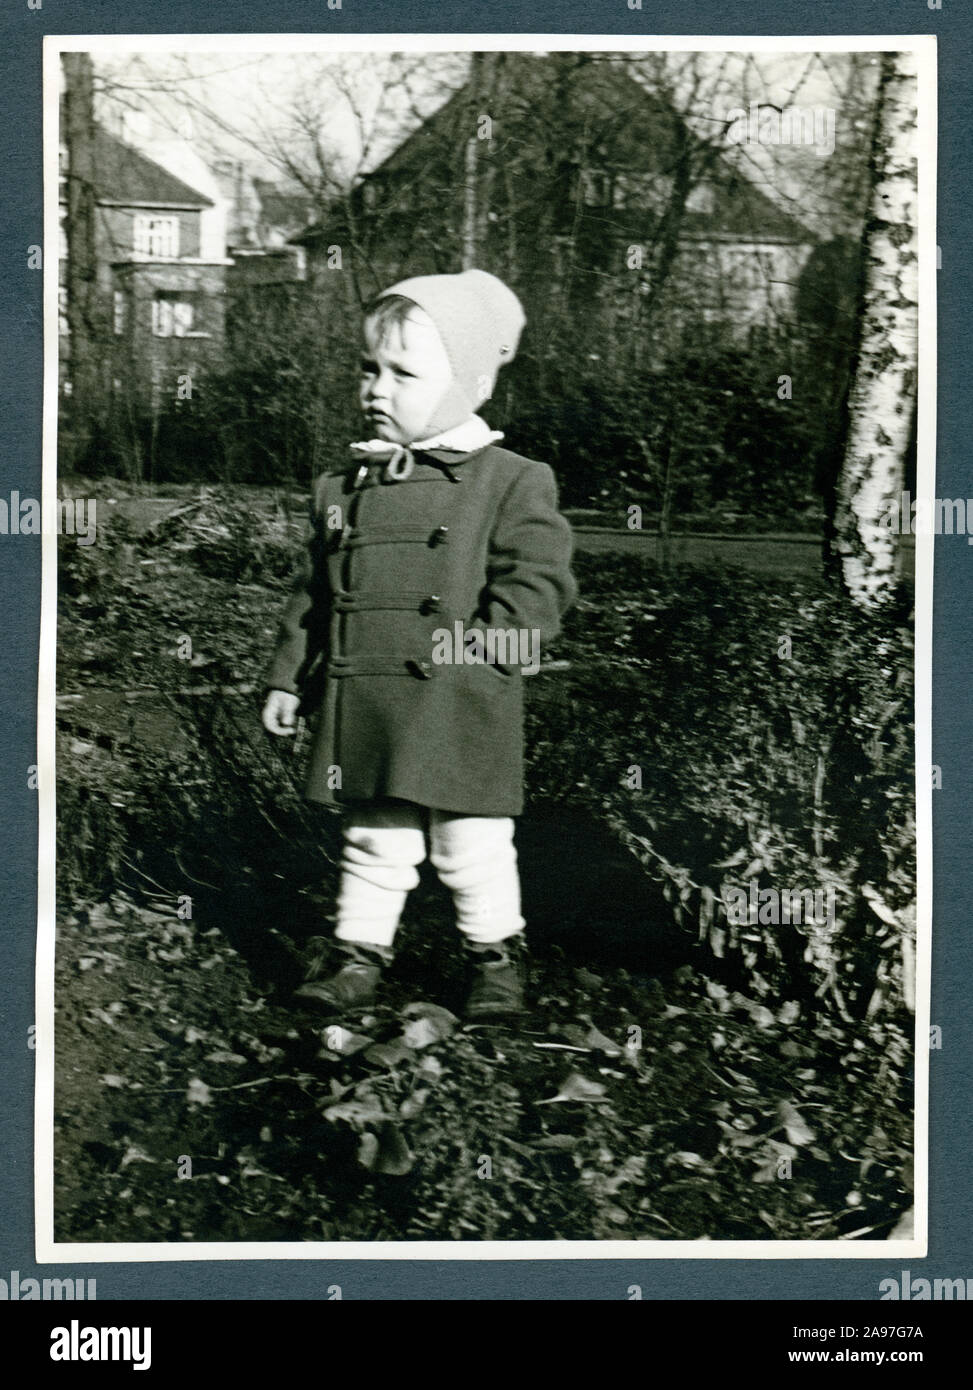 Europa, Deutschland, Hamburgo, kleiner Junge im Herbst im Garten , Aufnahme vom Noviembre de 1955 . / Europa, Alemania, Hamburgo, chico en tiempos de otoño en el jardín, foto de noviembre de 1955 . Foto de stock